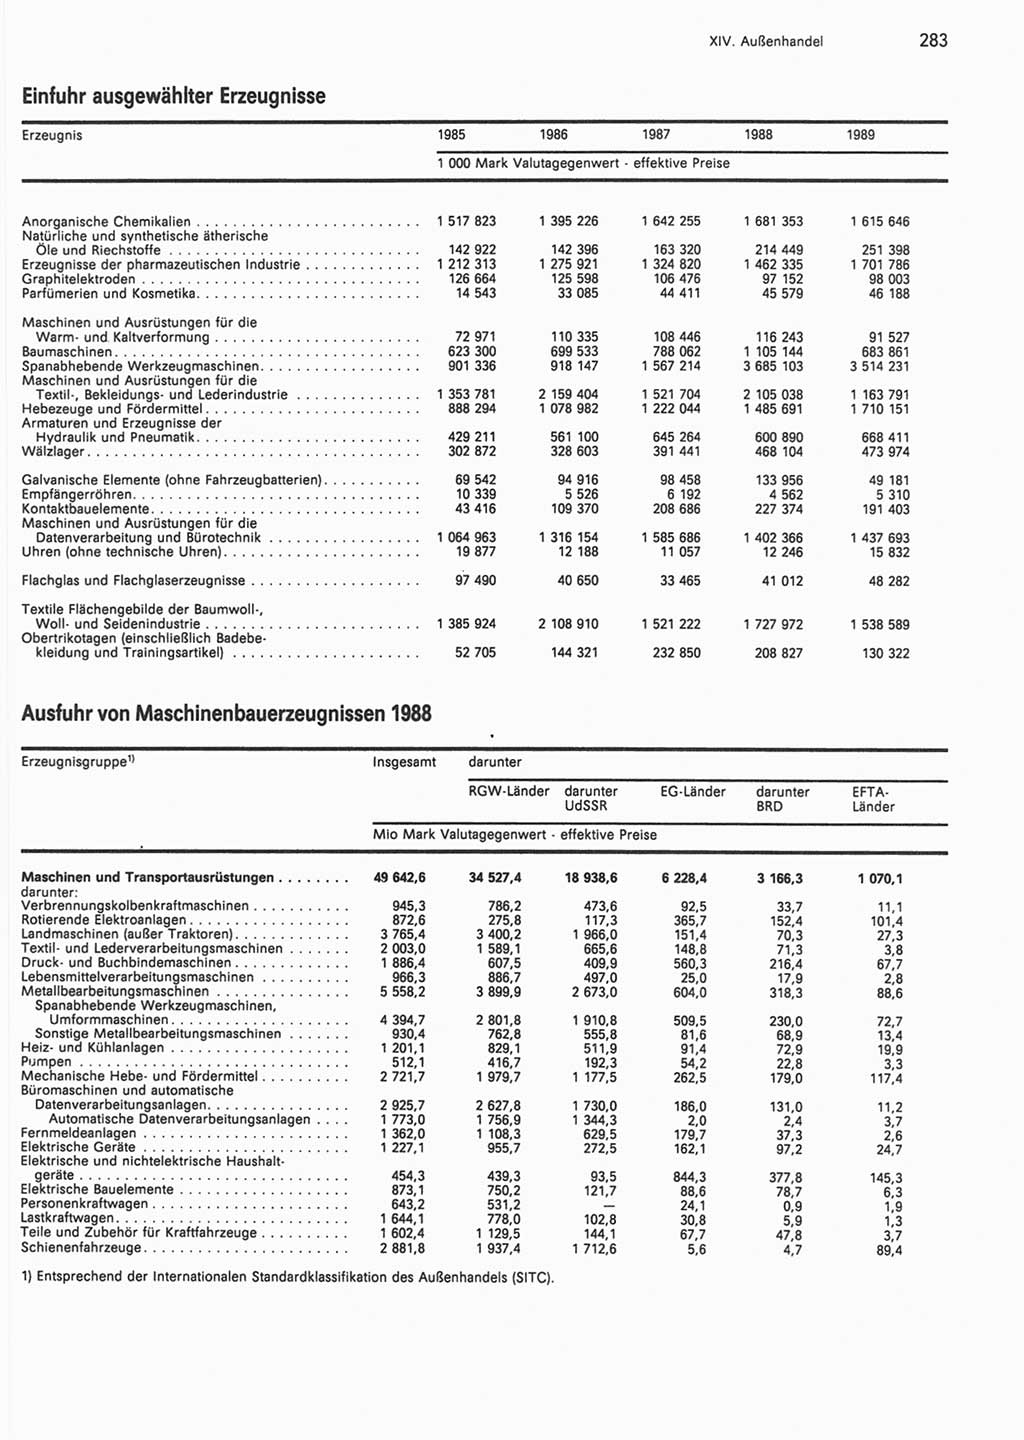 Statistisches Jahrbuch der Deutschen Demokratischen Republik (DDR) 1990, Seite 283 (Stat. Jb. DDR 1990, S. 283)